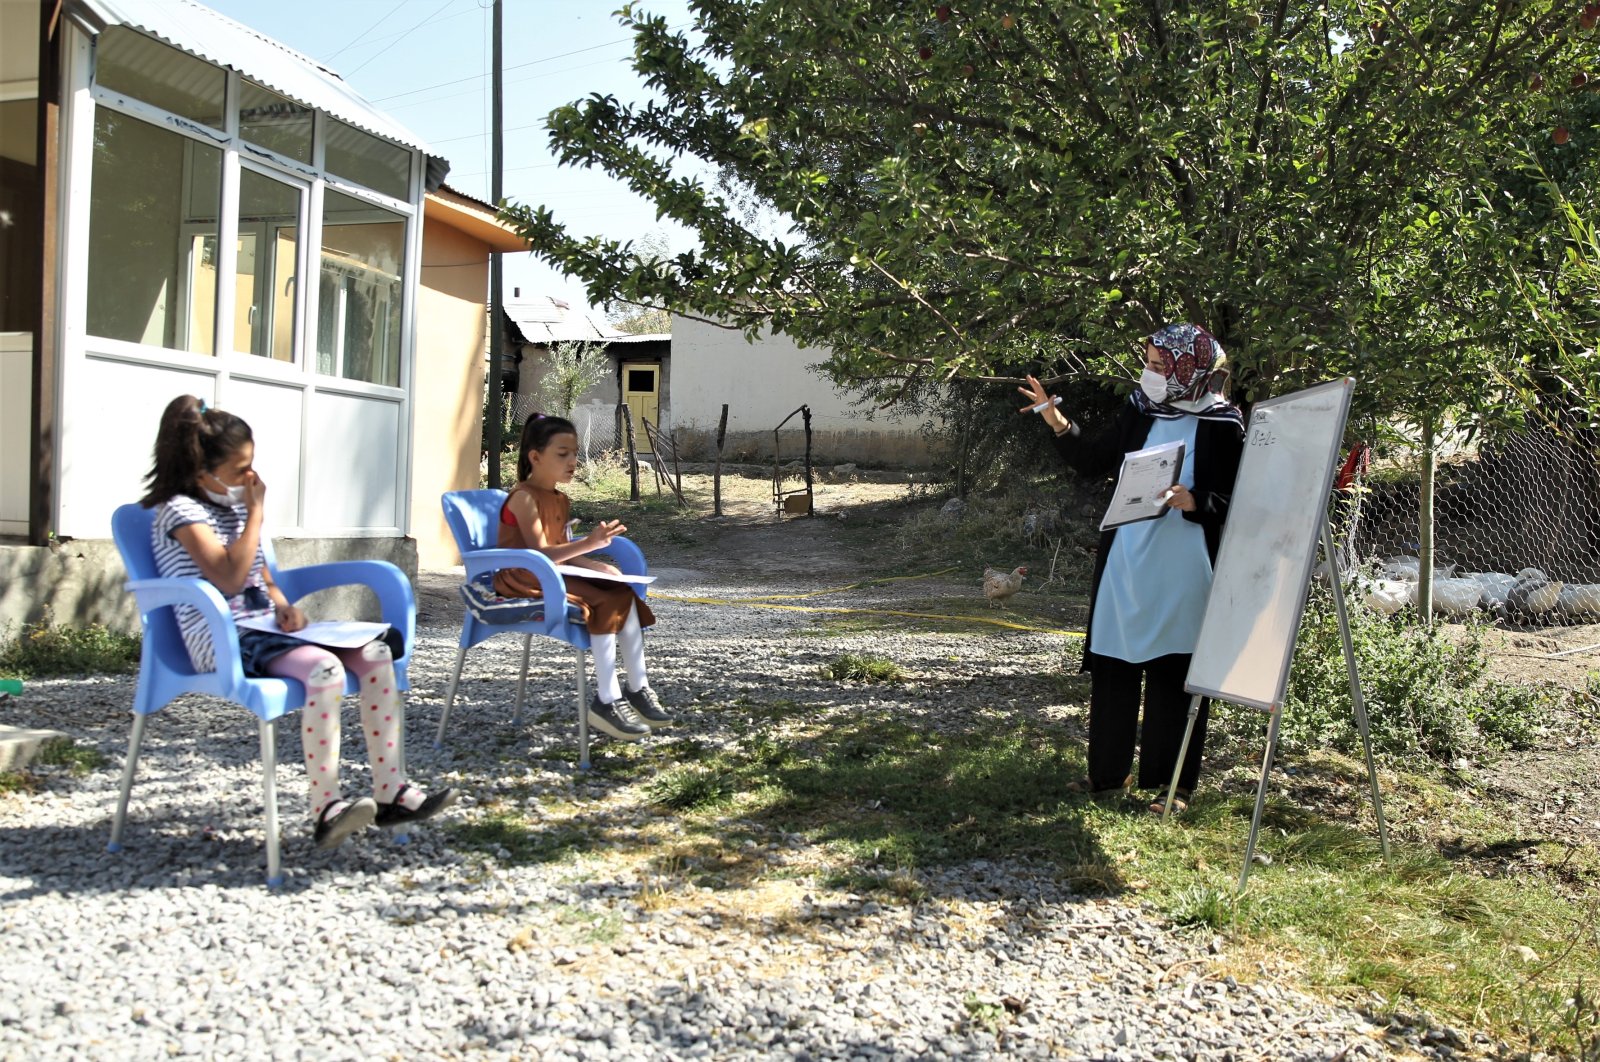 Турецкие преподаватели продолжают учить в условиях пандемии